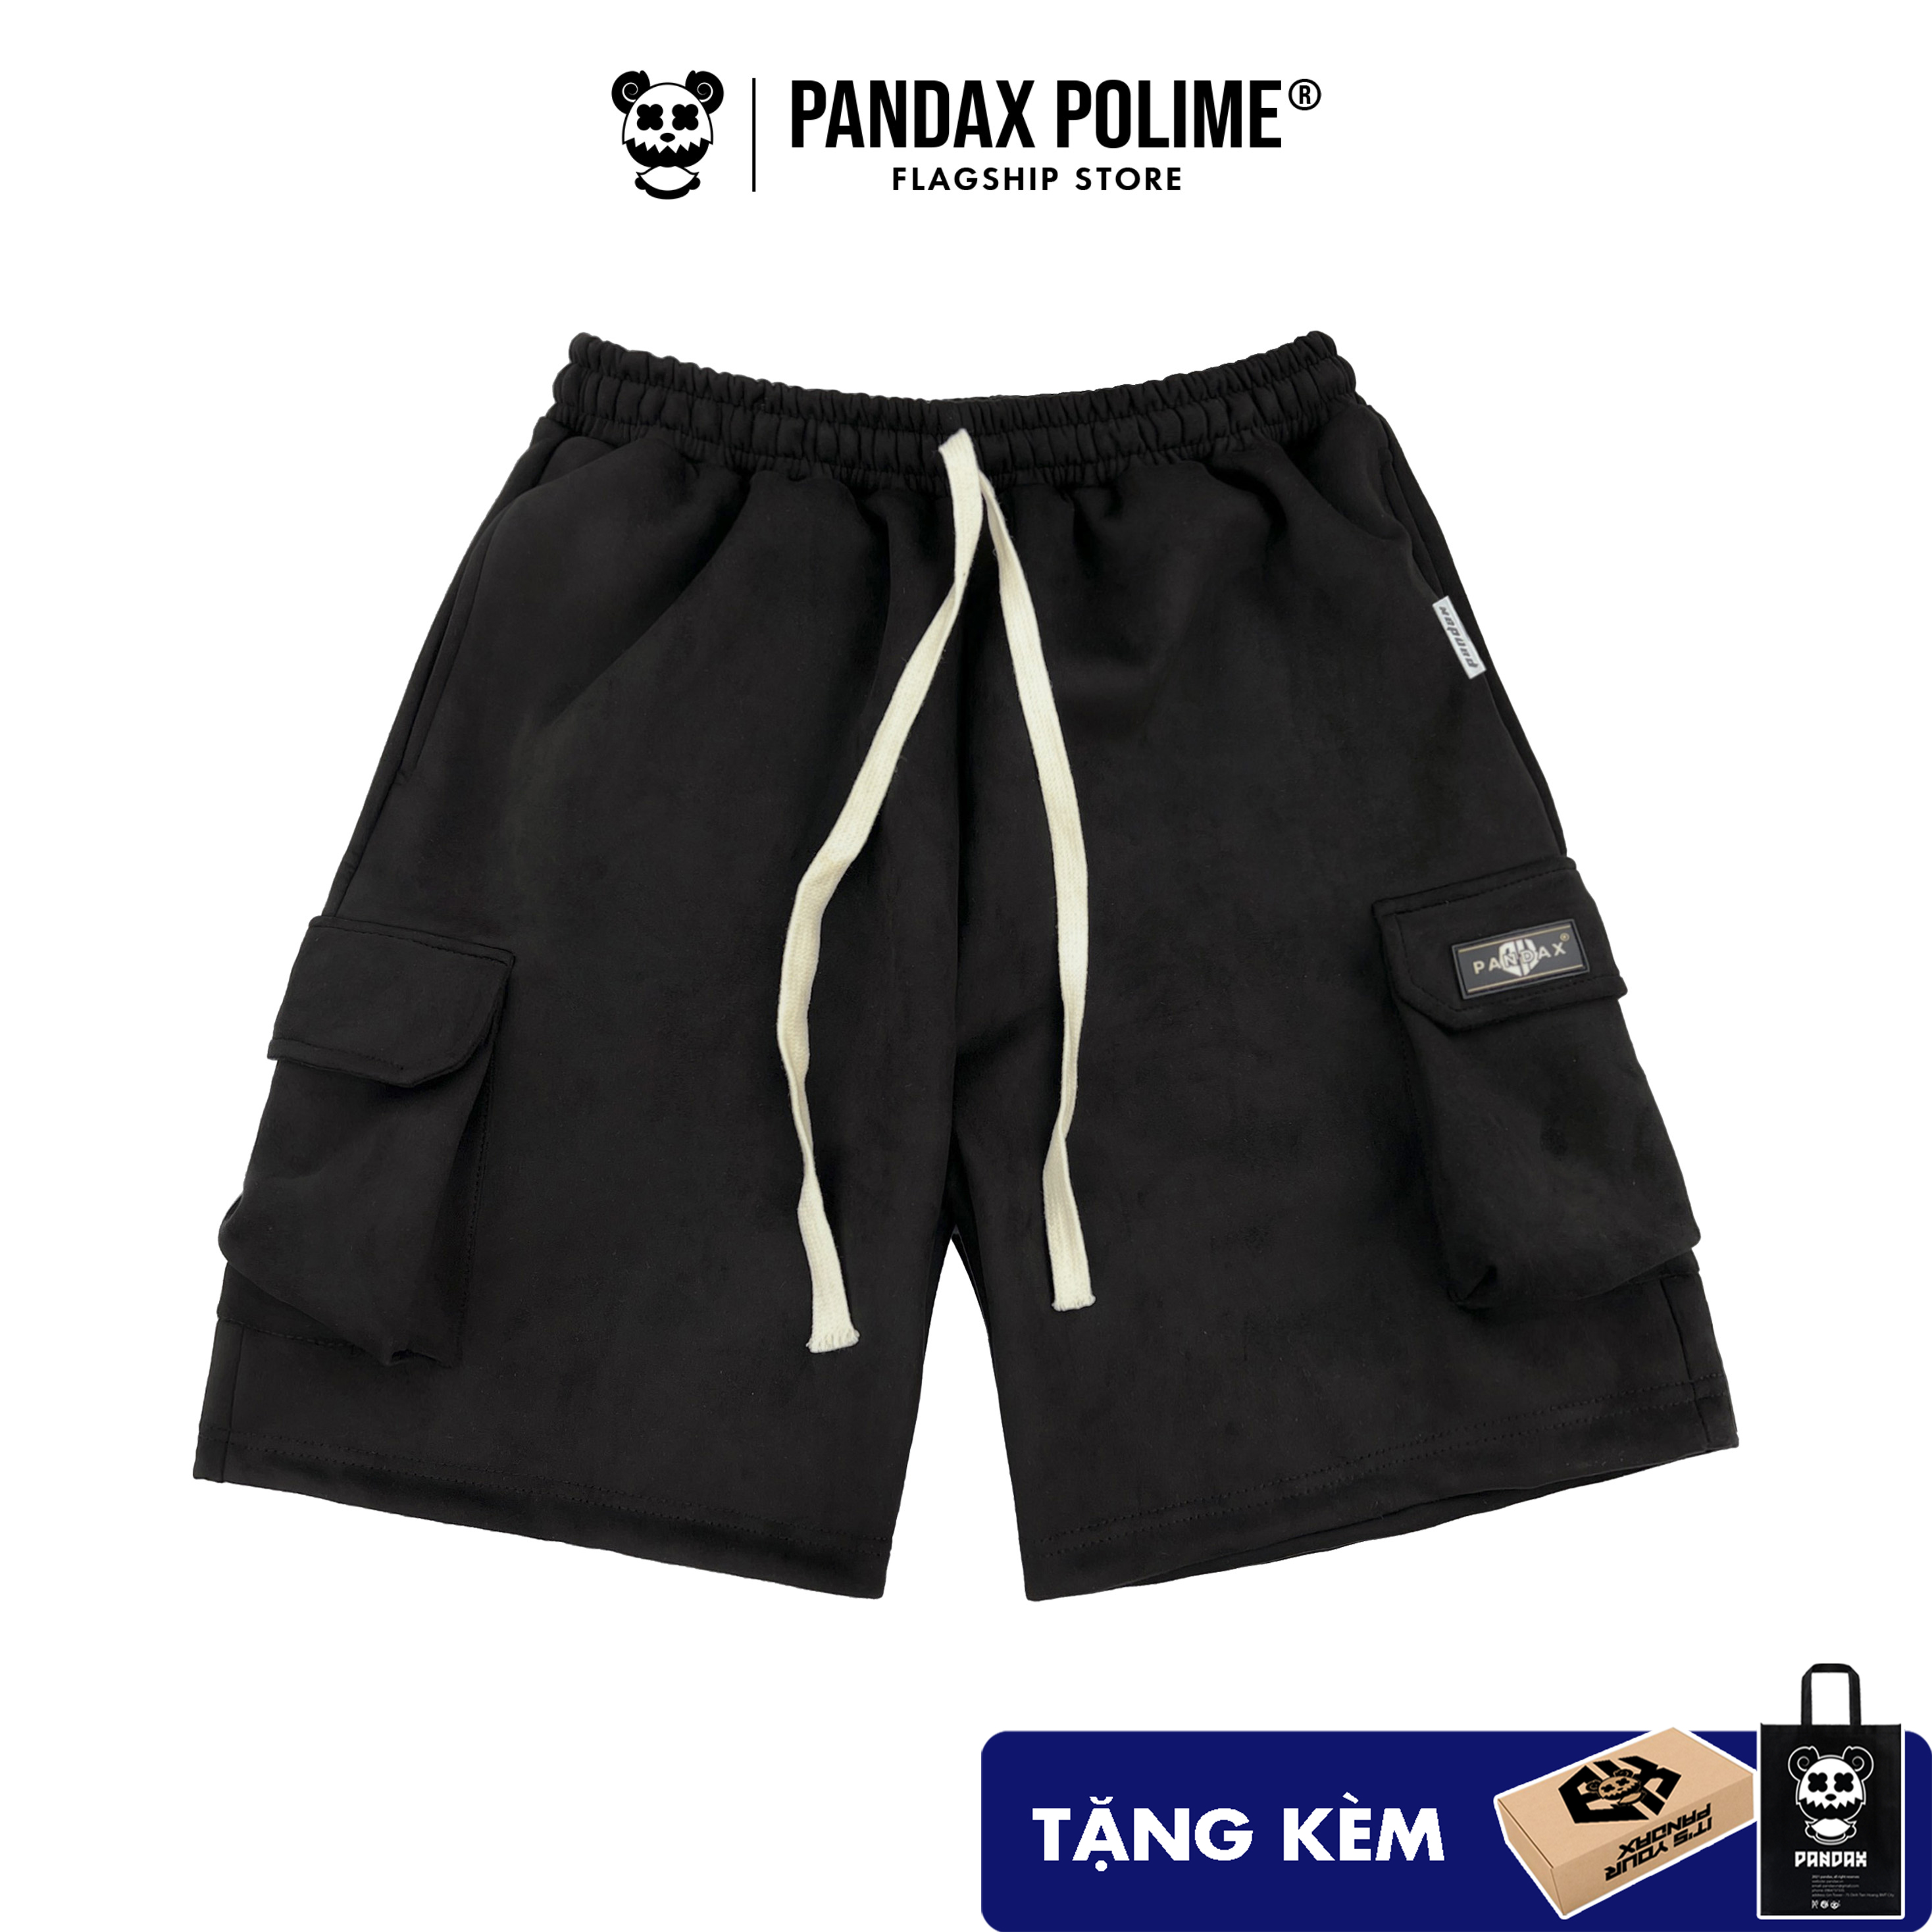 Quần short nam nữ quần đùi cargo túi hộp phong cách y2k chất liệu da lộn cao cấp fullbox local brand PANDAX POLIME